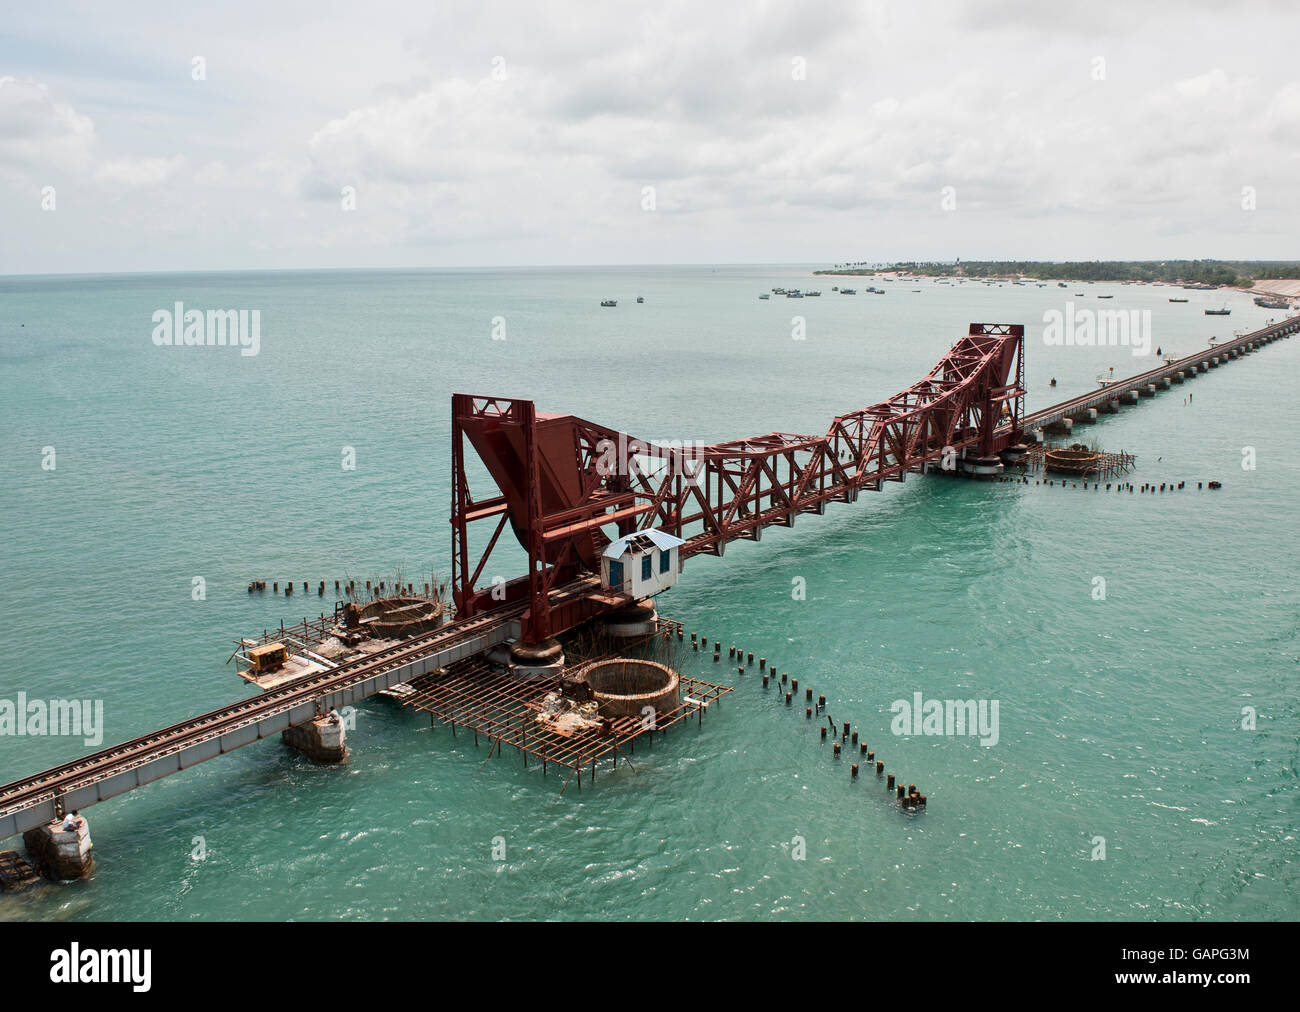 Largo y antiguo puente de ferrocarril con puente levadizo construido sobre el mar del sur continental conexión de Tamil Nadu, India en la isla de Rameshwaram. Foto de stock